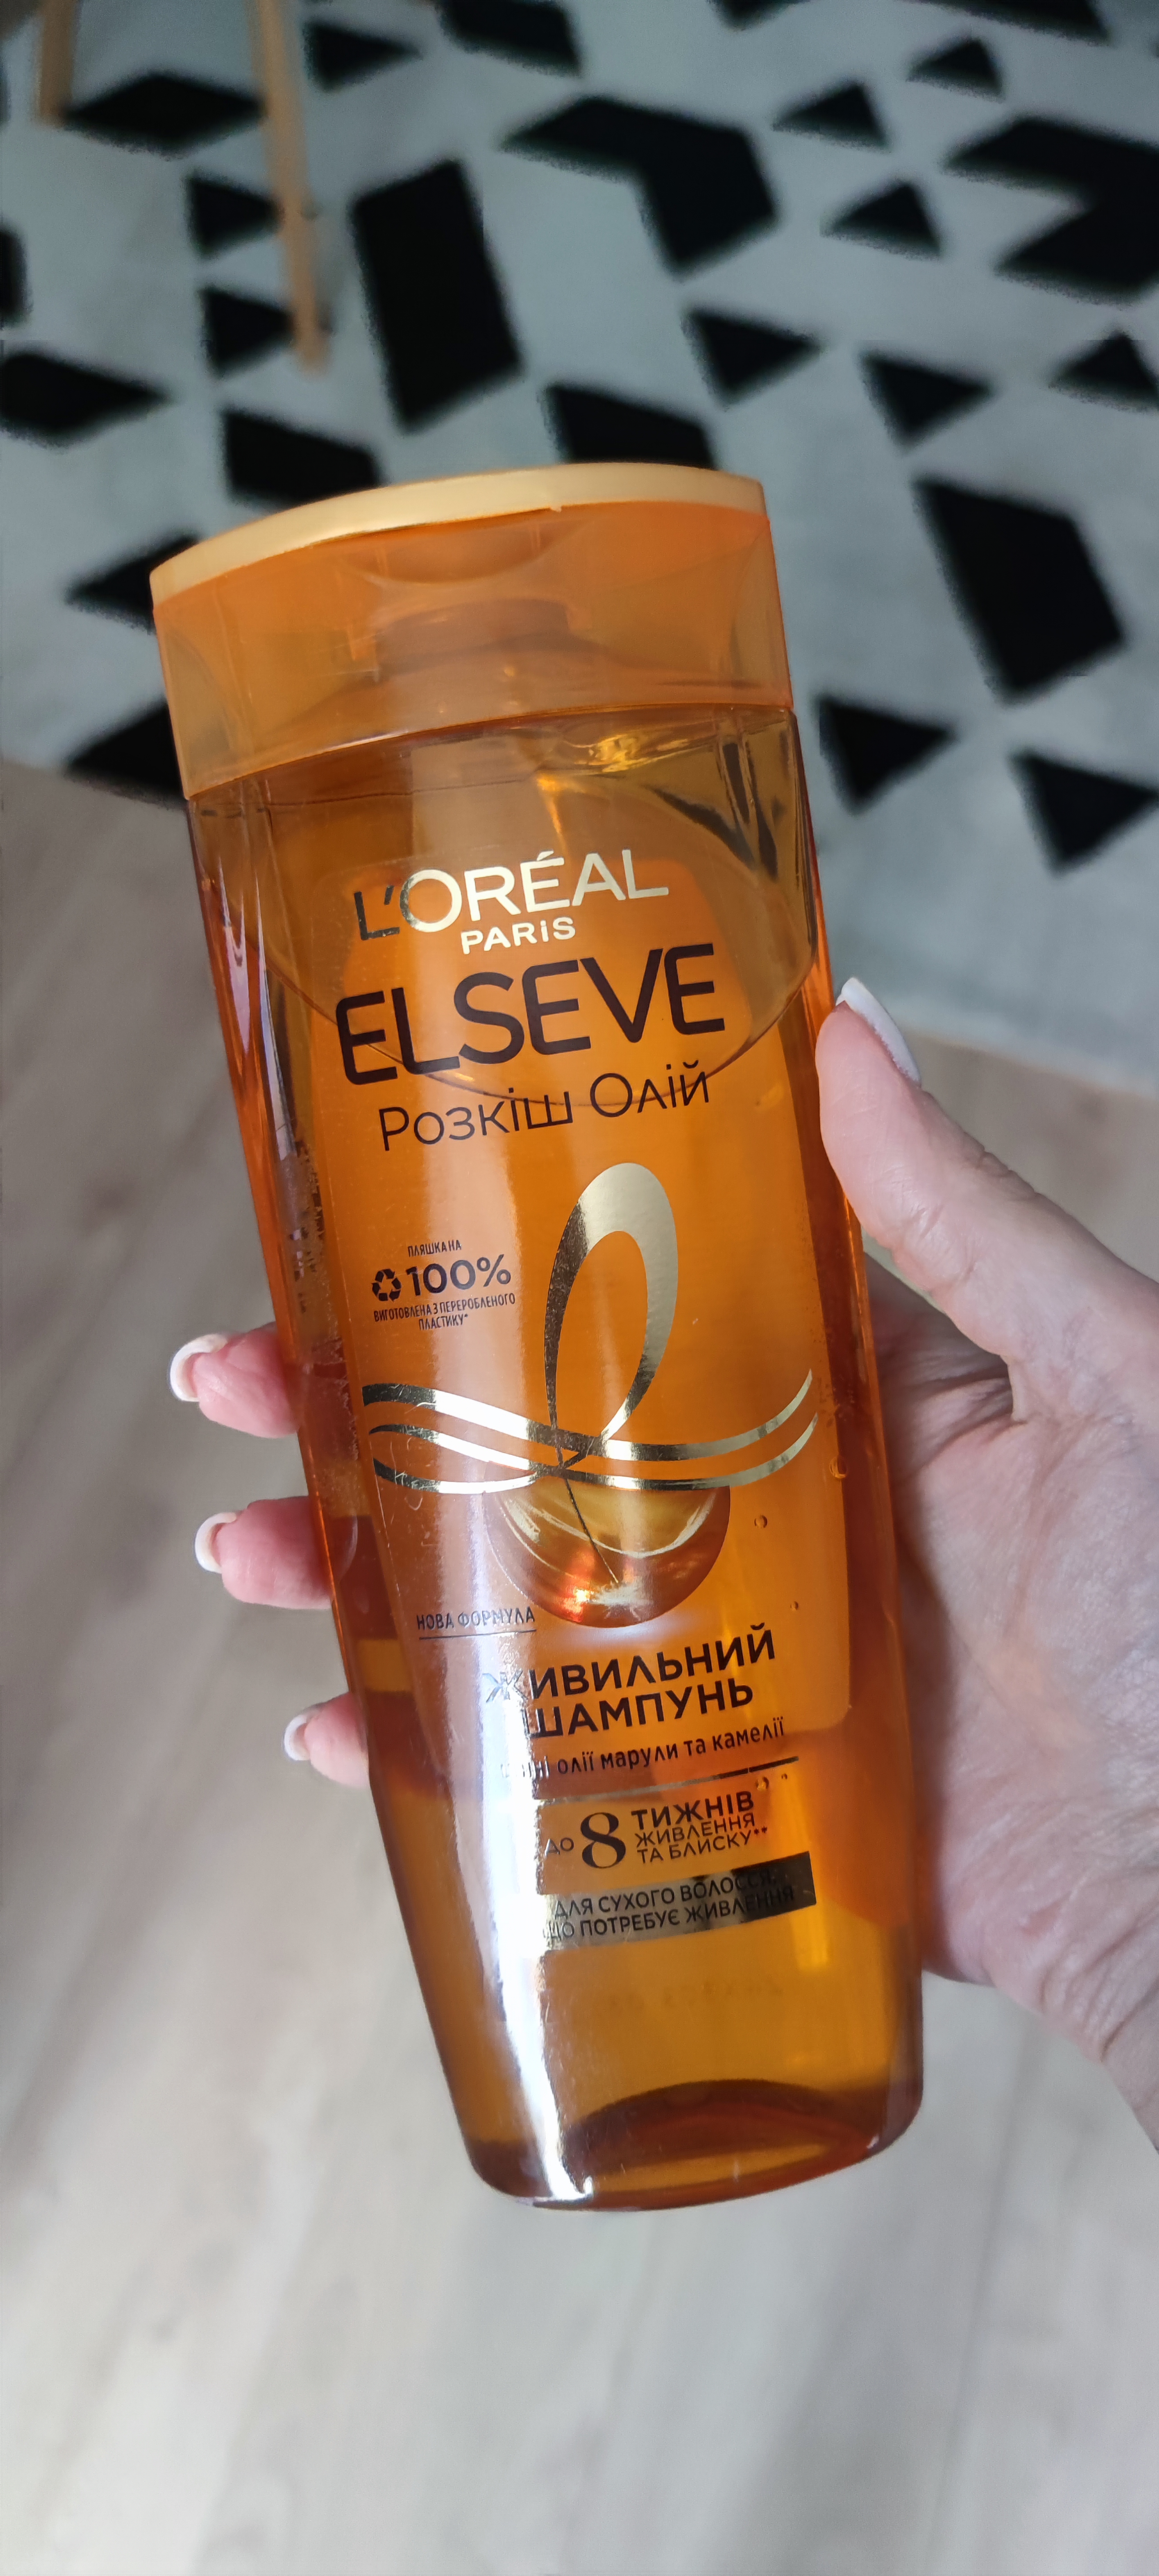 Шикарний шампунь від L'Oréal Elseve Розкіш олій